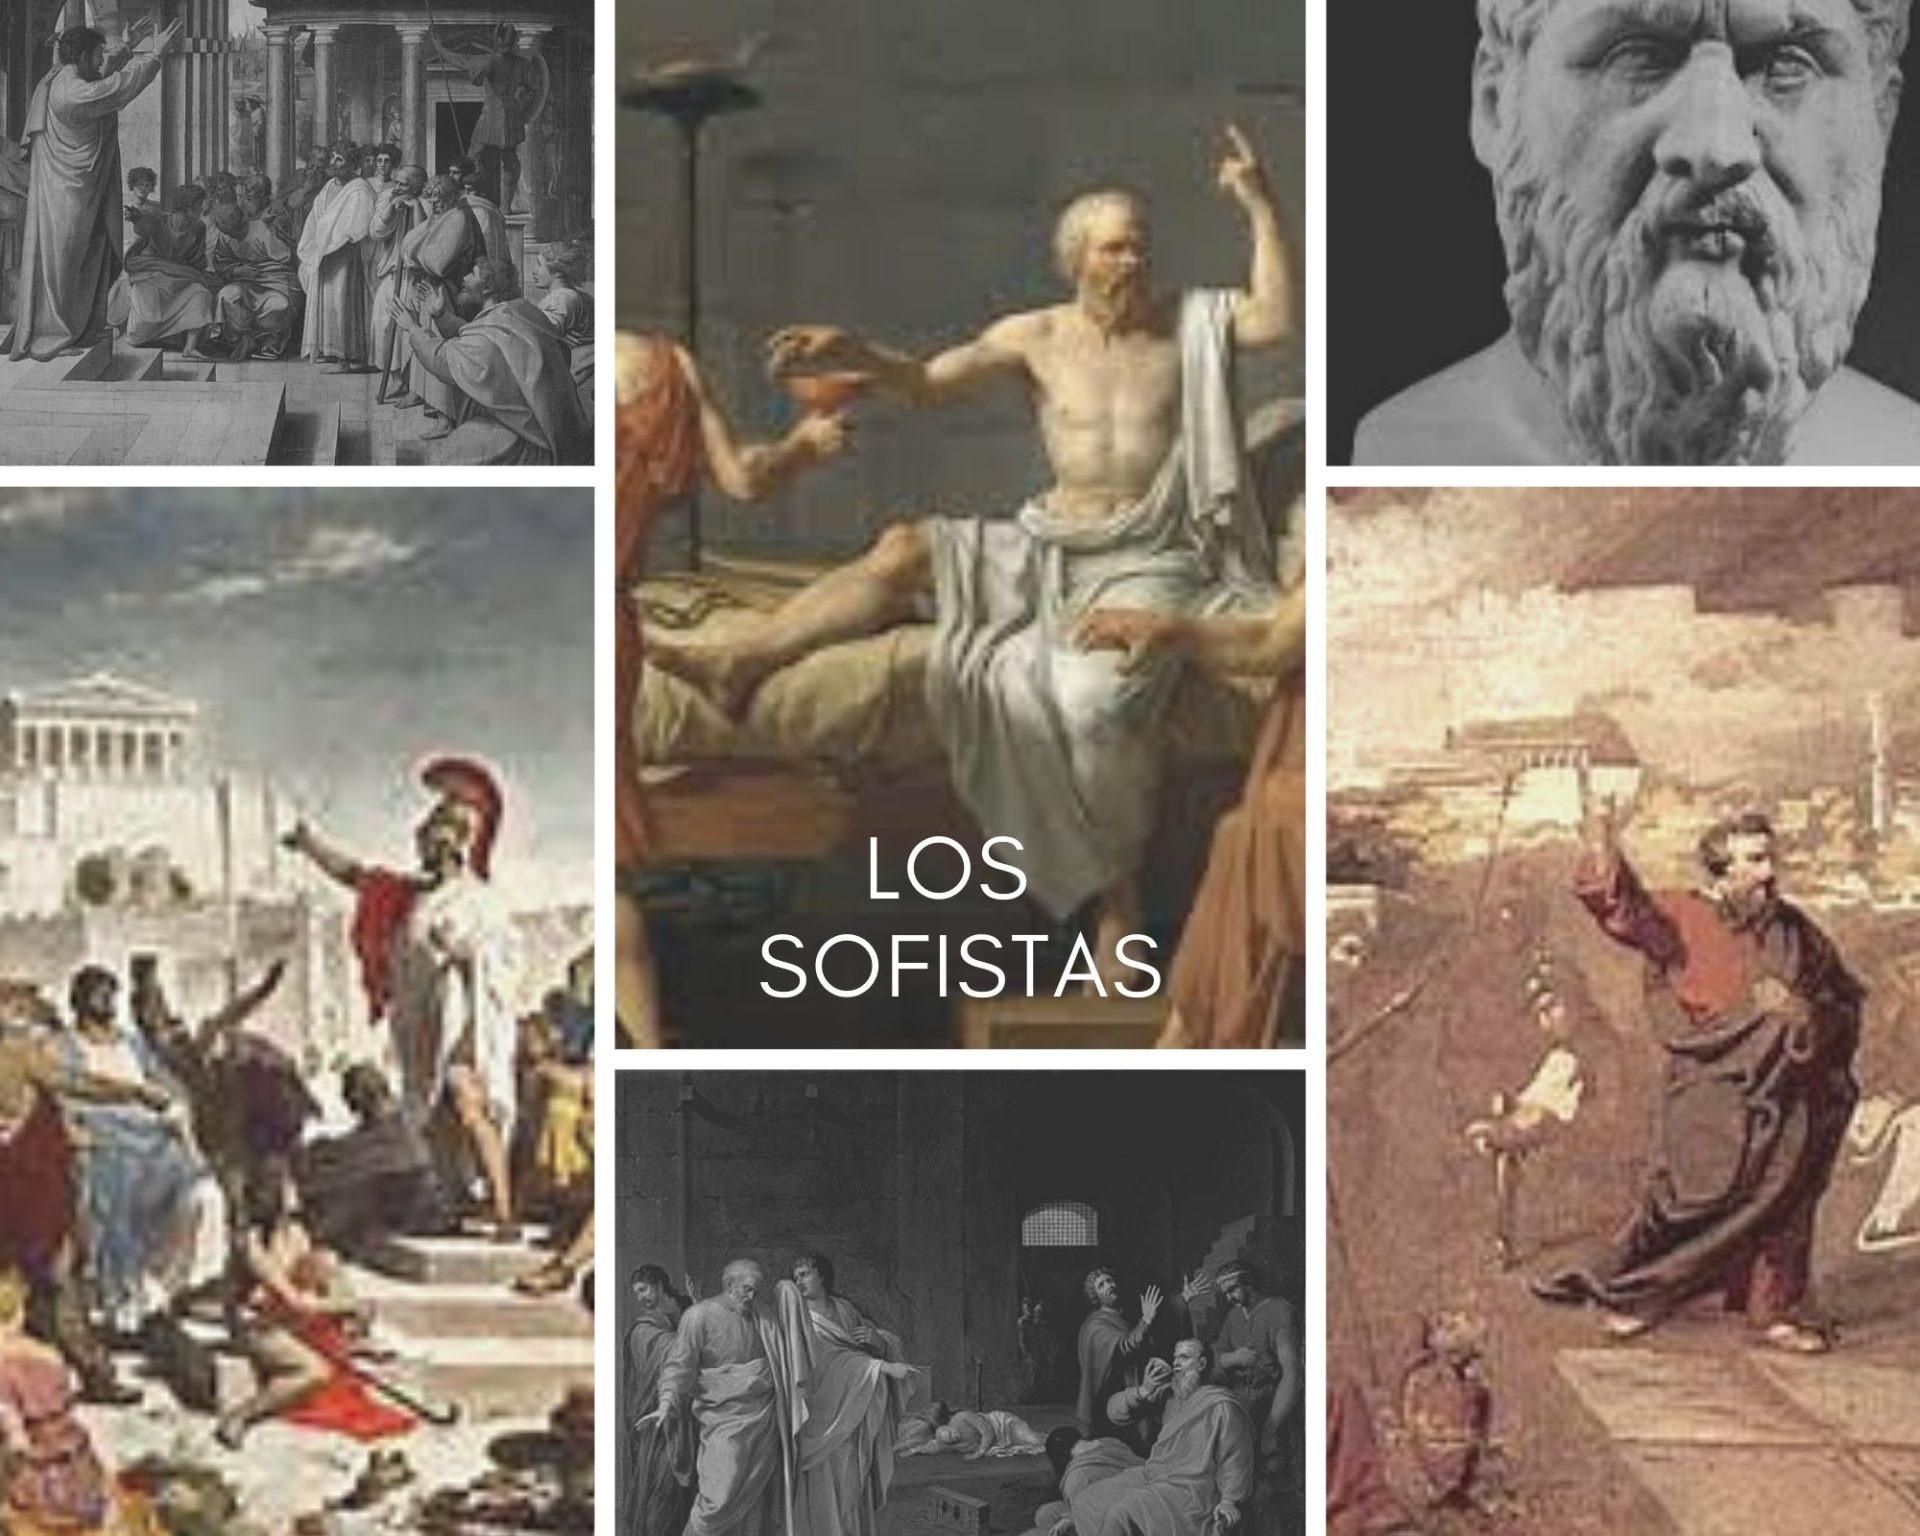 Los sofistas historia filosofía griega